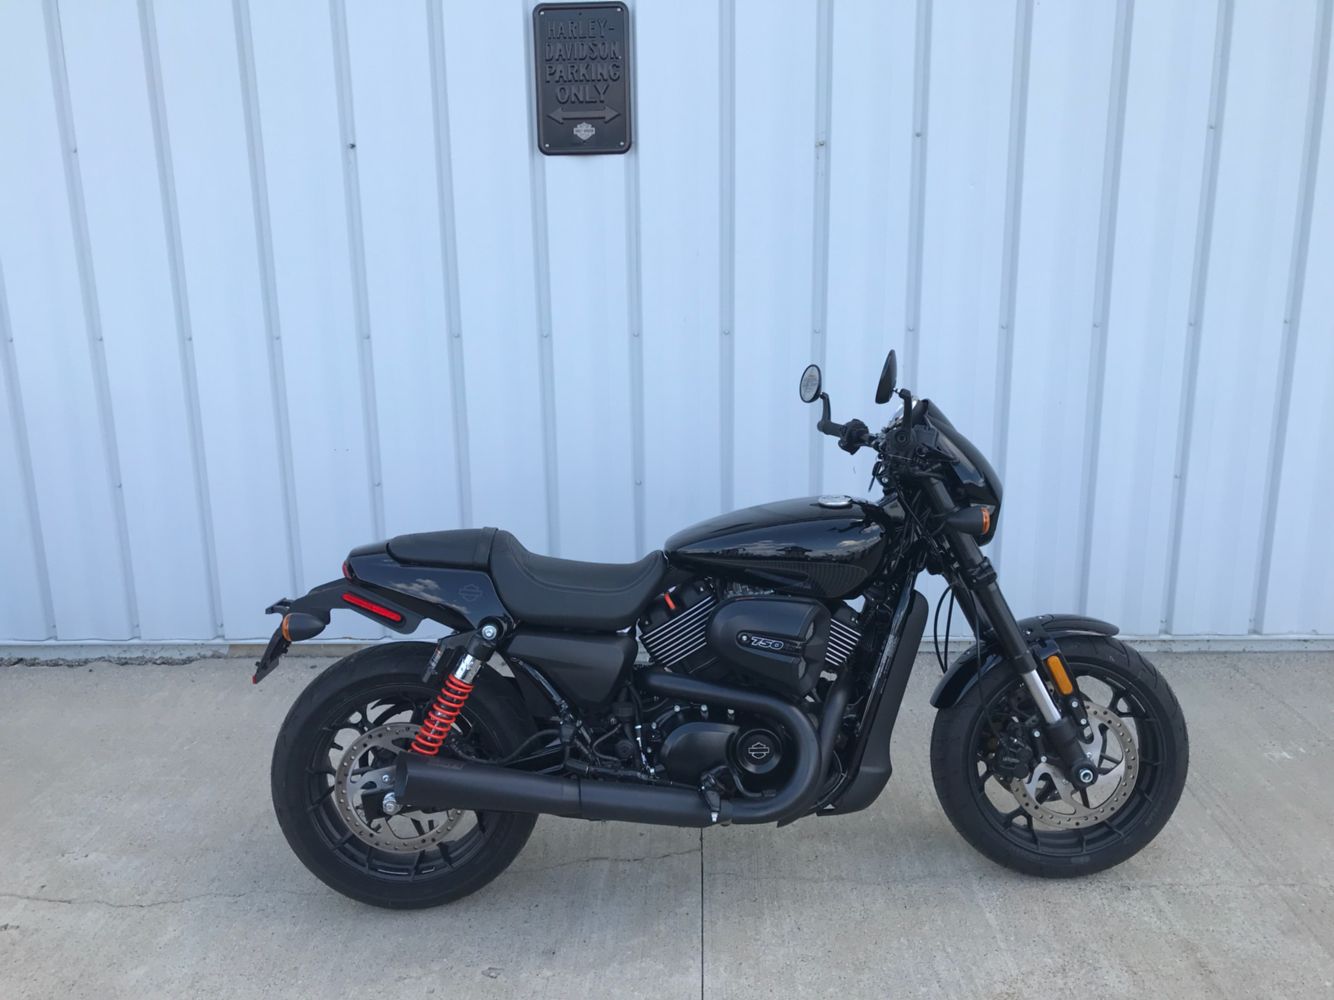 New 2017 Harley Davidson Street Rod Vivid Black Motorcycles In Osceola Ia 510082